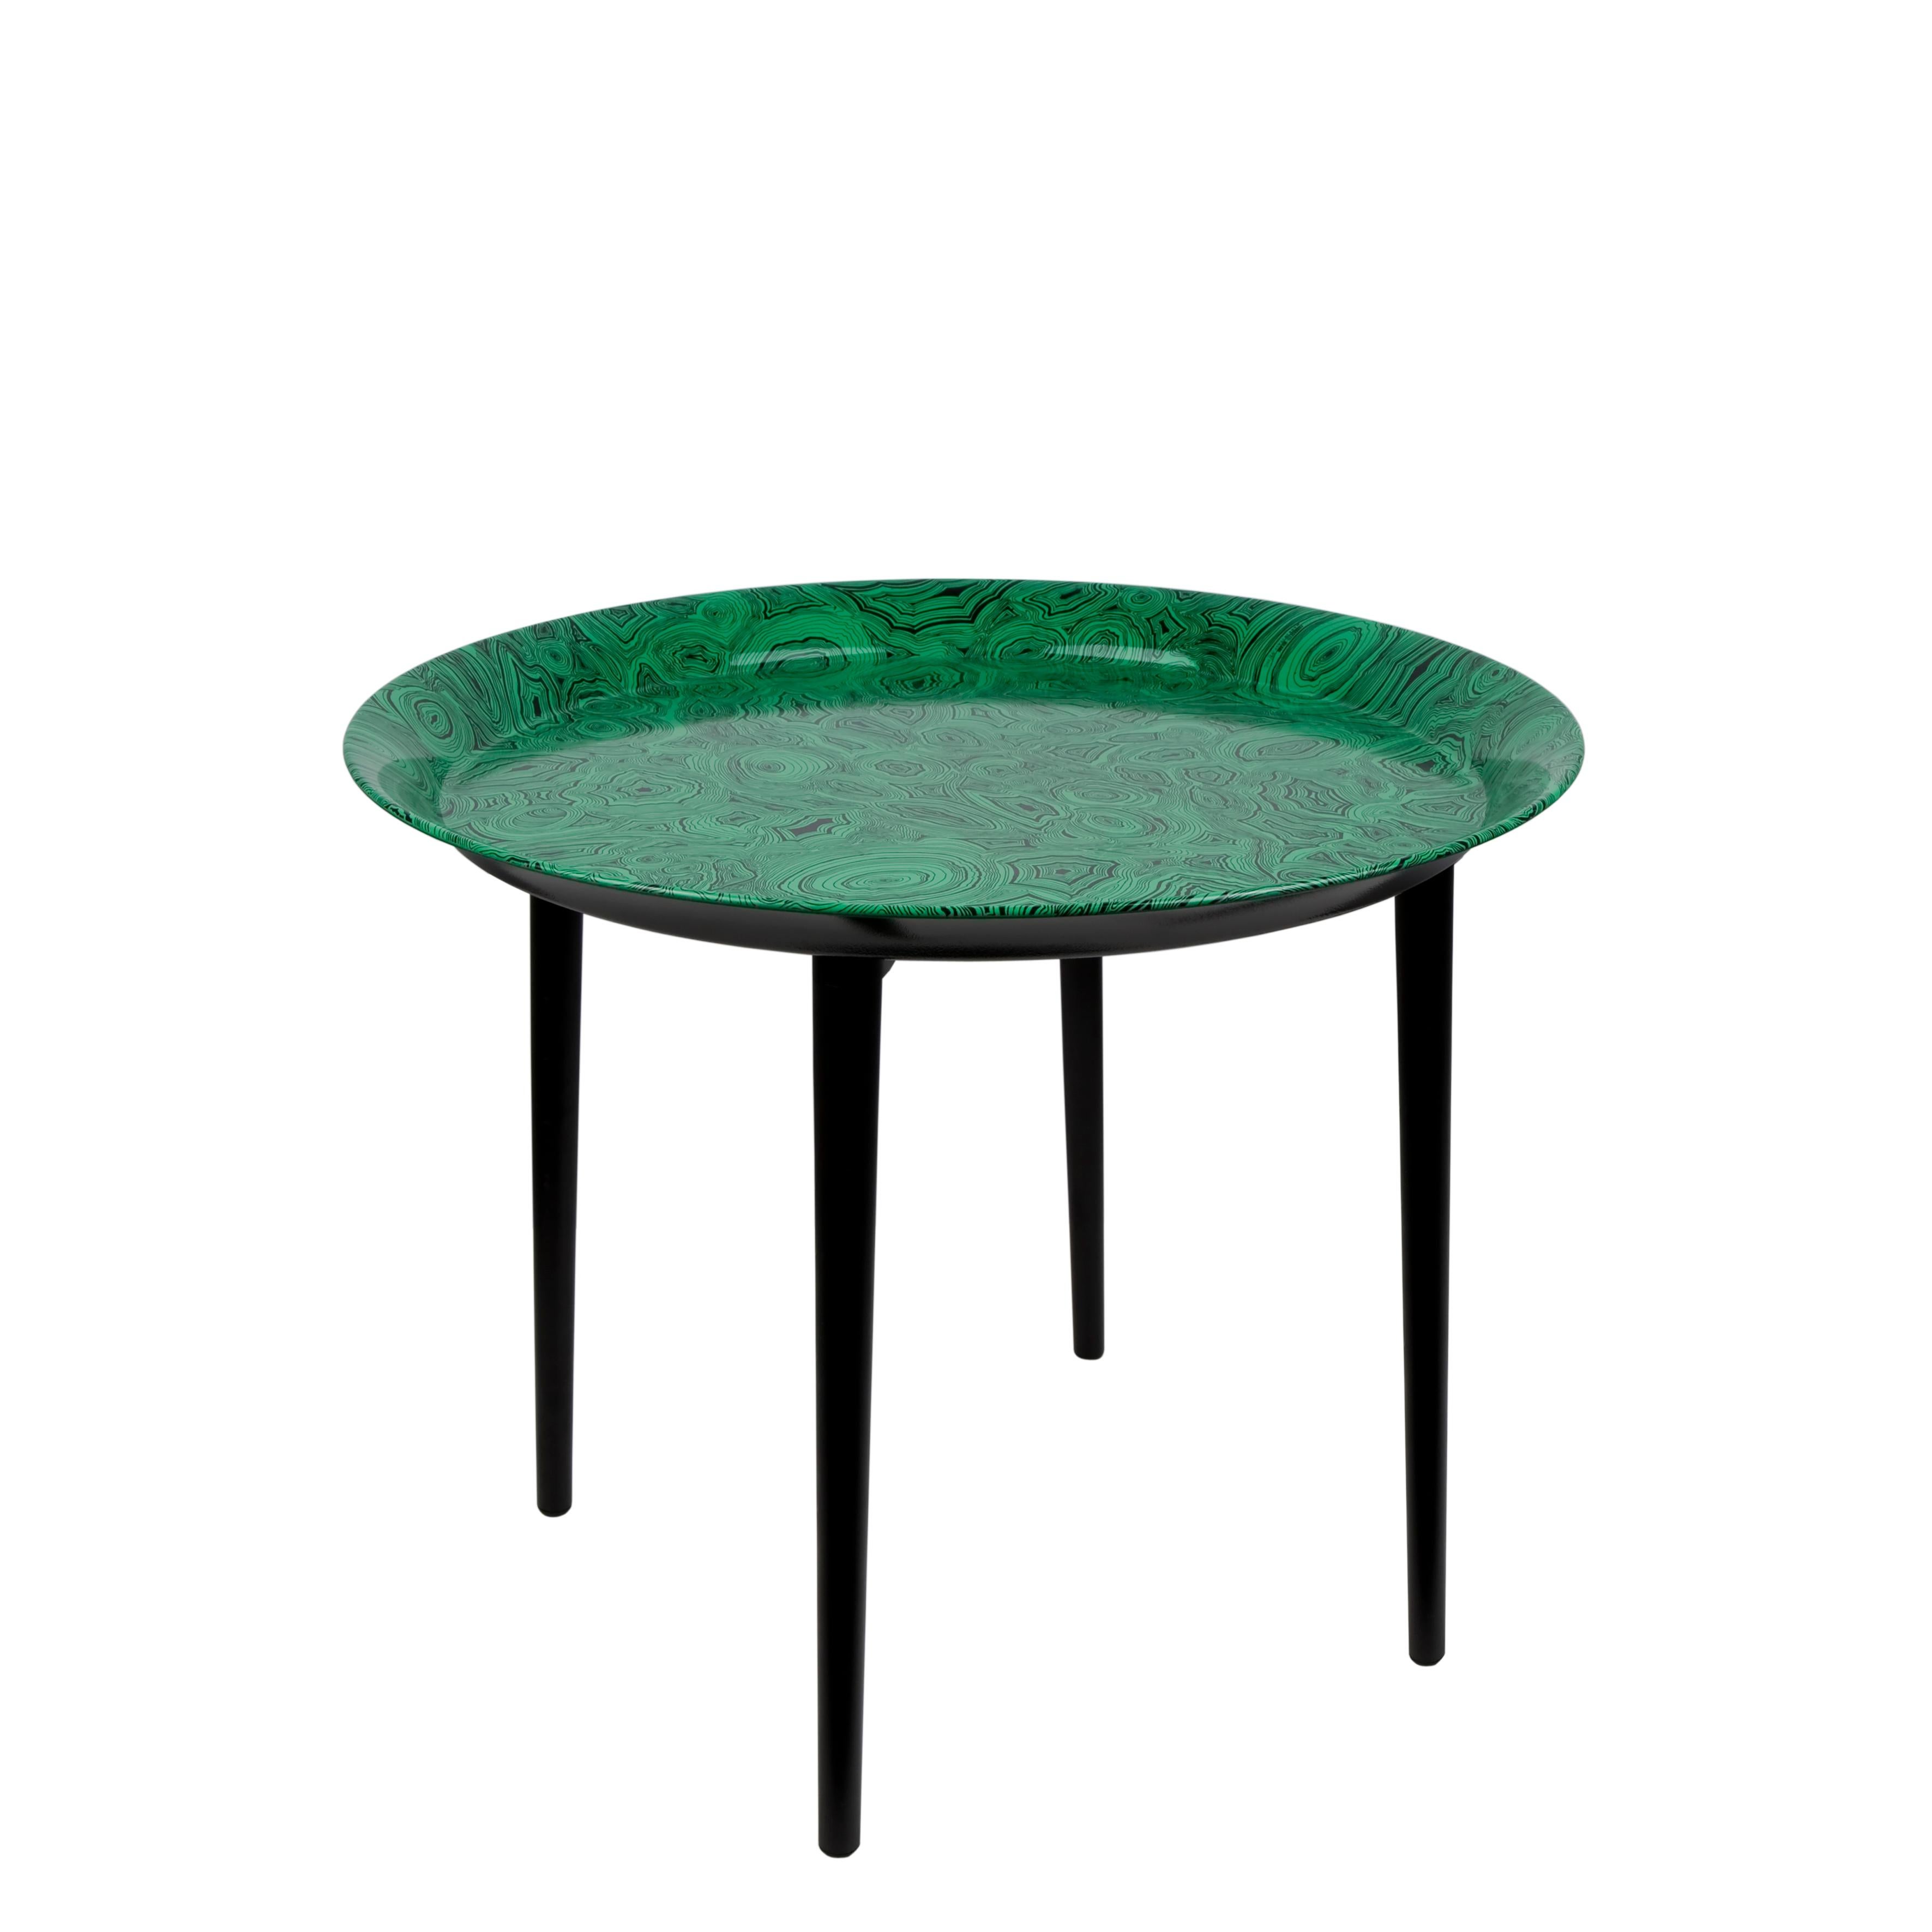 Les plateaux Fornasetti deviennent d'élégantes tables basses en ajoutant cette base en bois noir. Convient à un plateau rond en métal de 60 cm de diamètre. 

La deuxième image montre le plateau sur son support (le plateau n'est pas inclus dans le